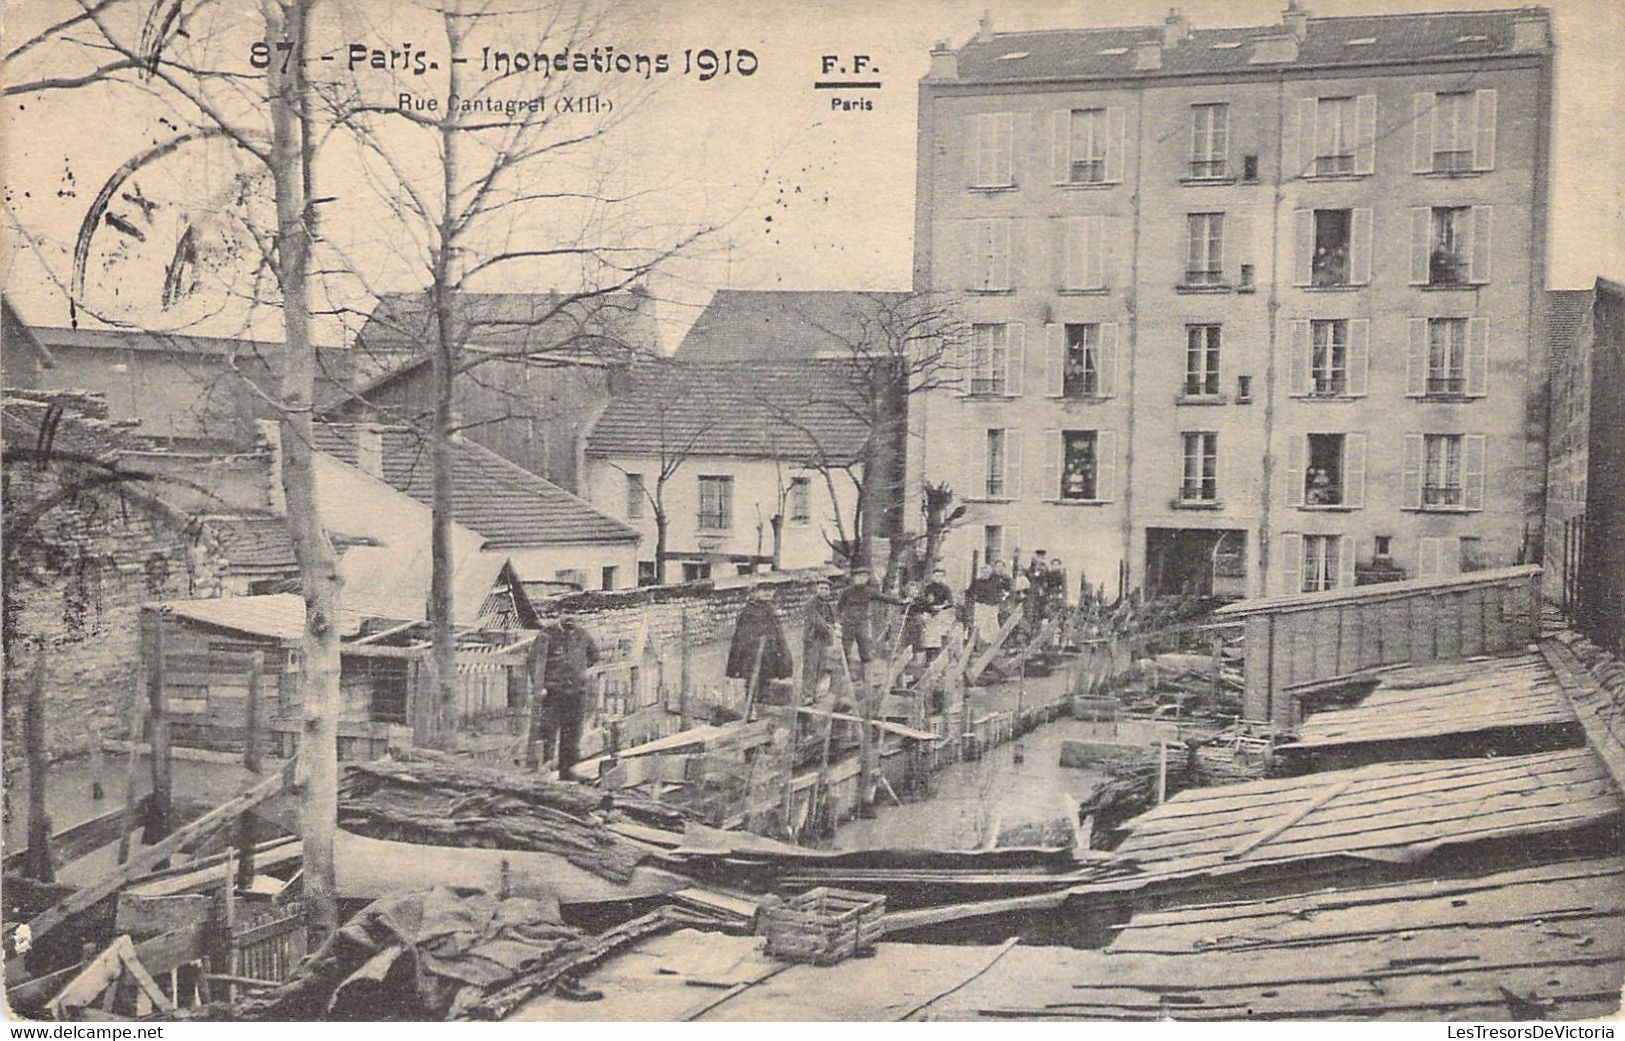 CPA France - Paris - Inondations De 1910 - Rue Cantagrel - XIIIe - F. F. Paris - Oblitérée Bruxelles 1910 - De Overstroming Van 1910